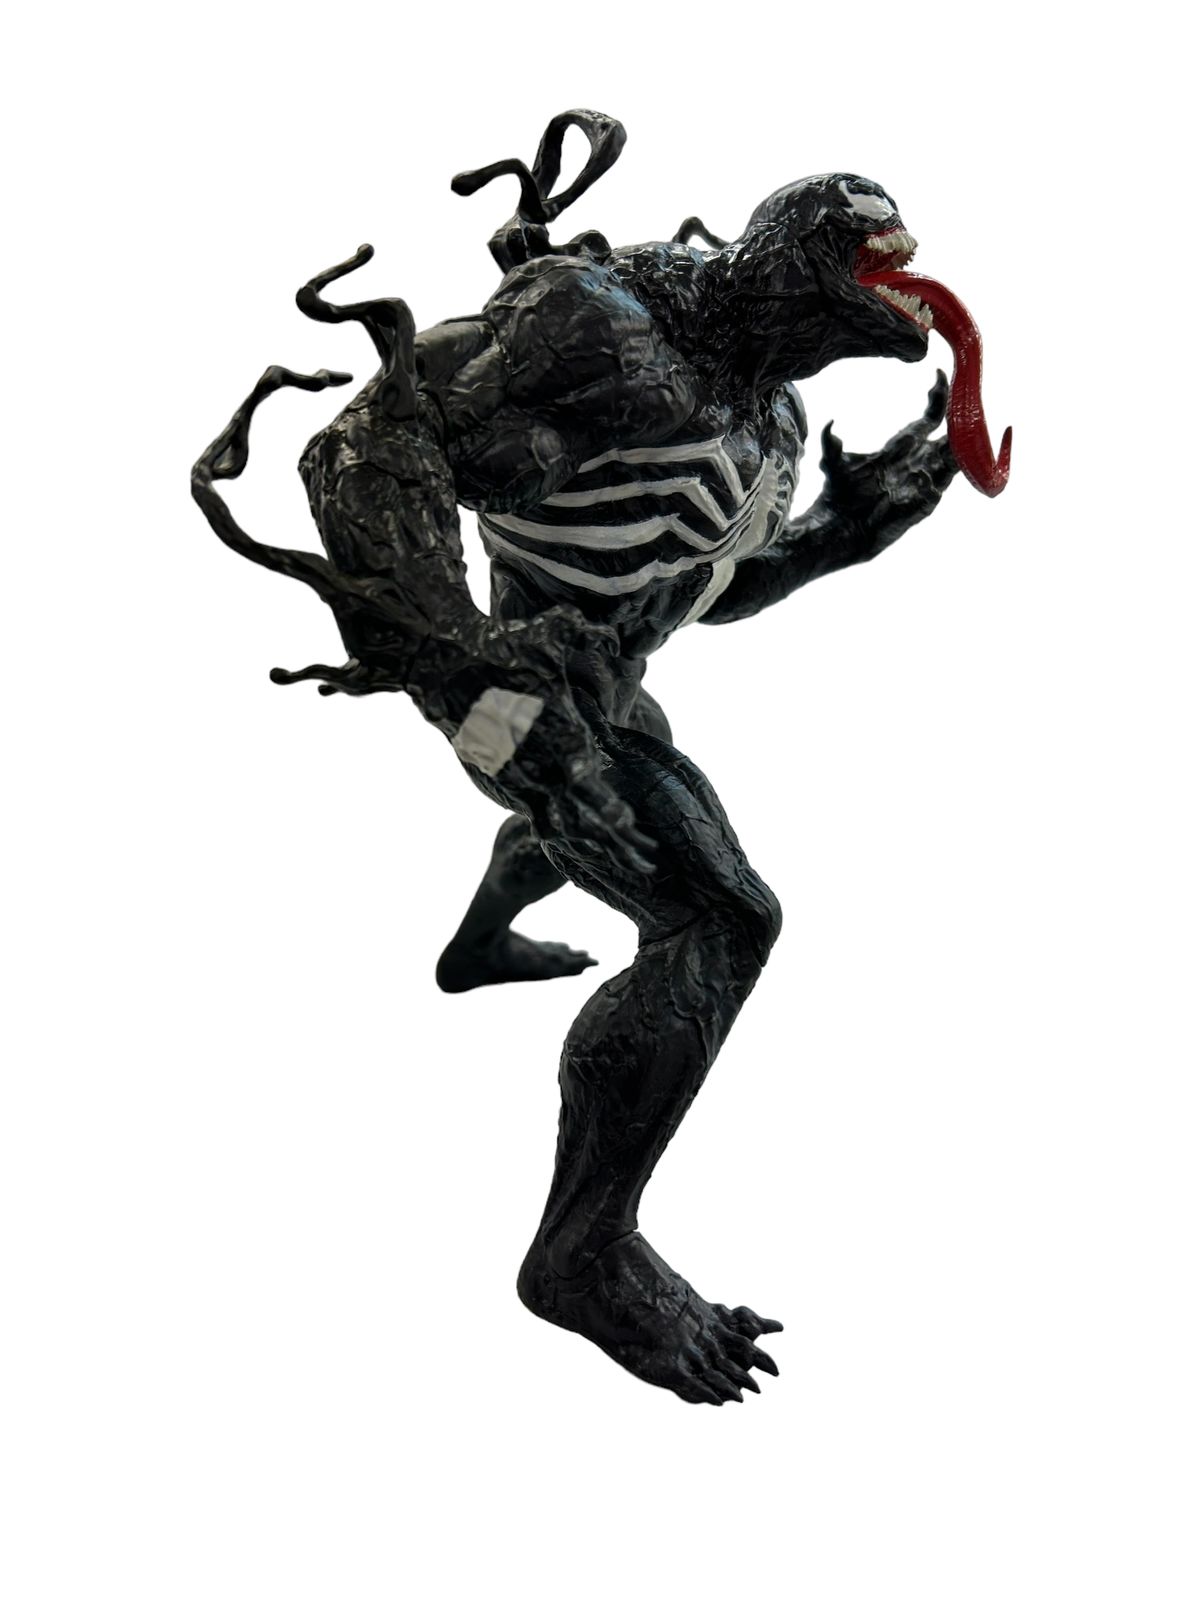 セガ MARVEL COMICS 80th Anniversary スーパープレミアムフィギュア “Venom” SPM ヴェノム 全1種